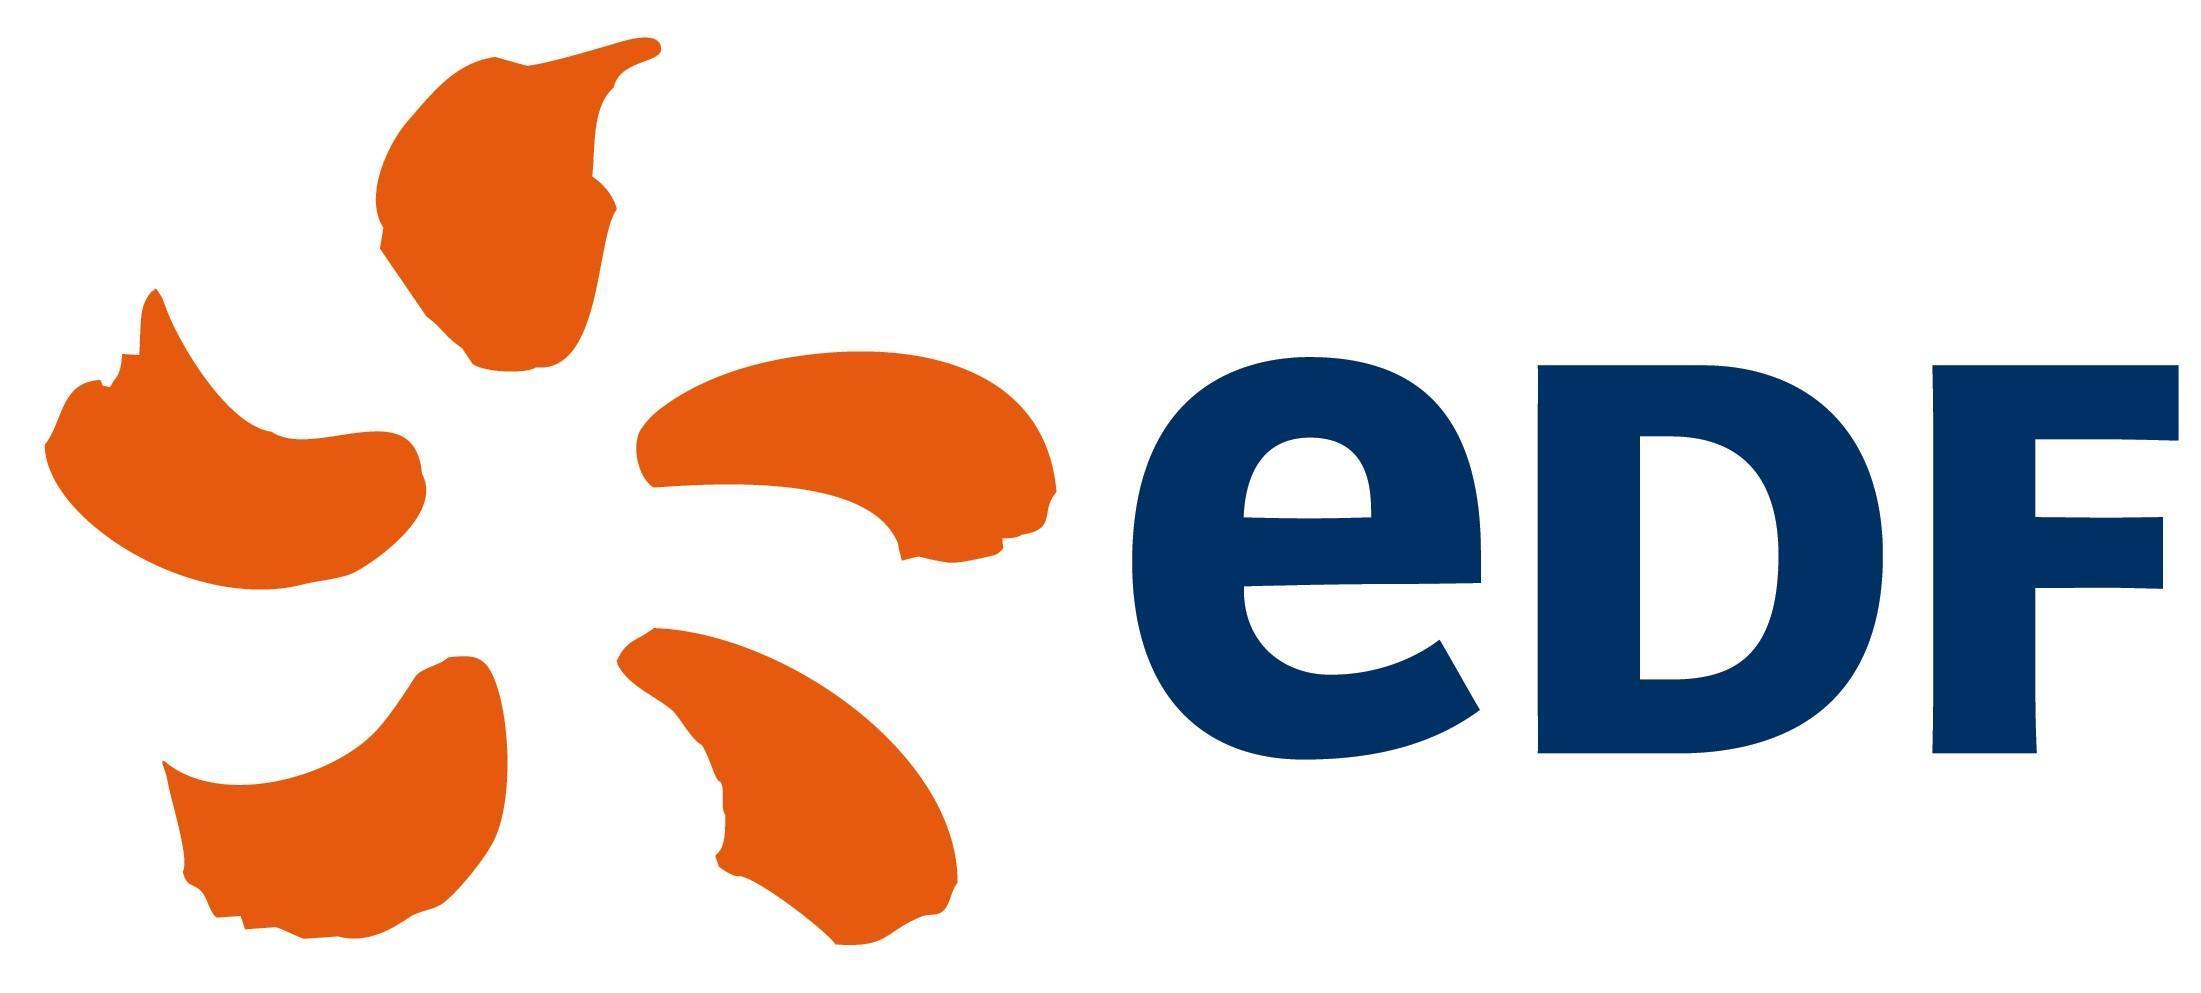 EDF augmente son capital de 4 milliards d’euros